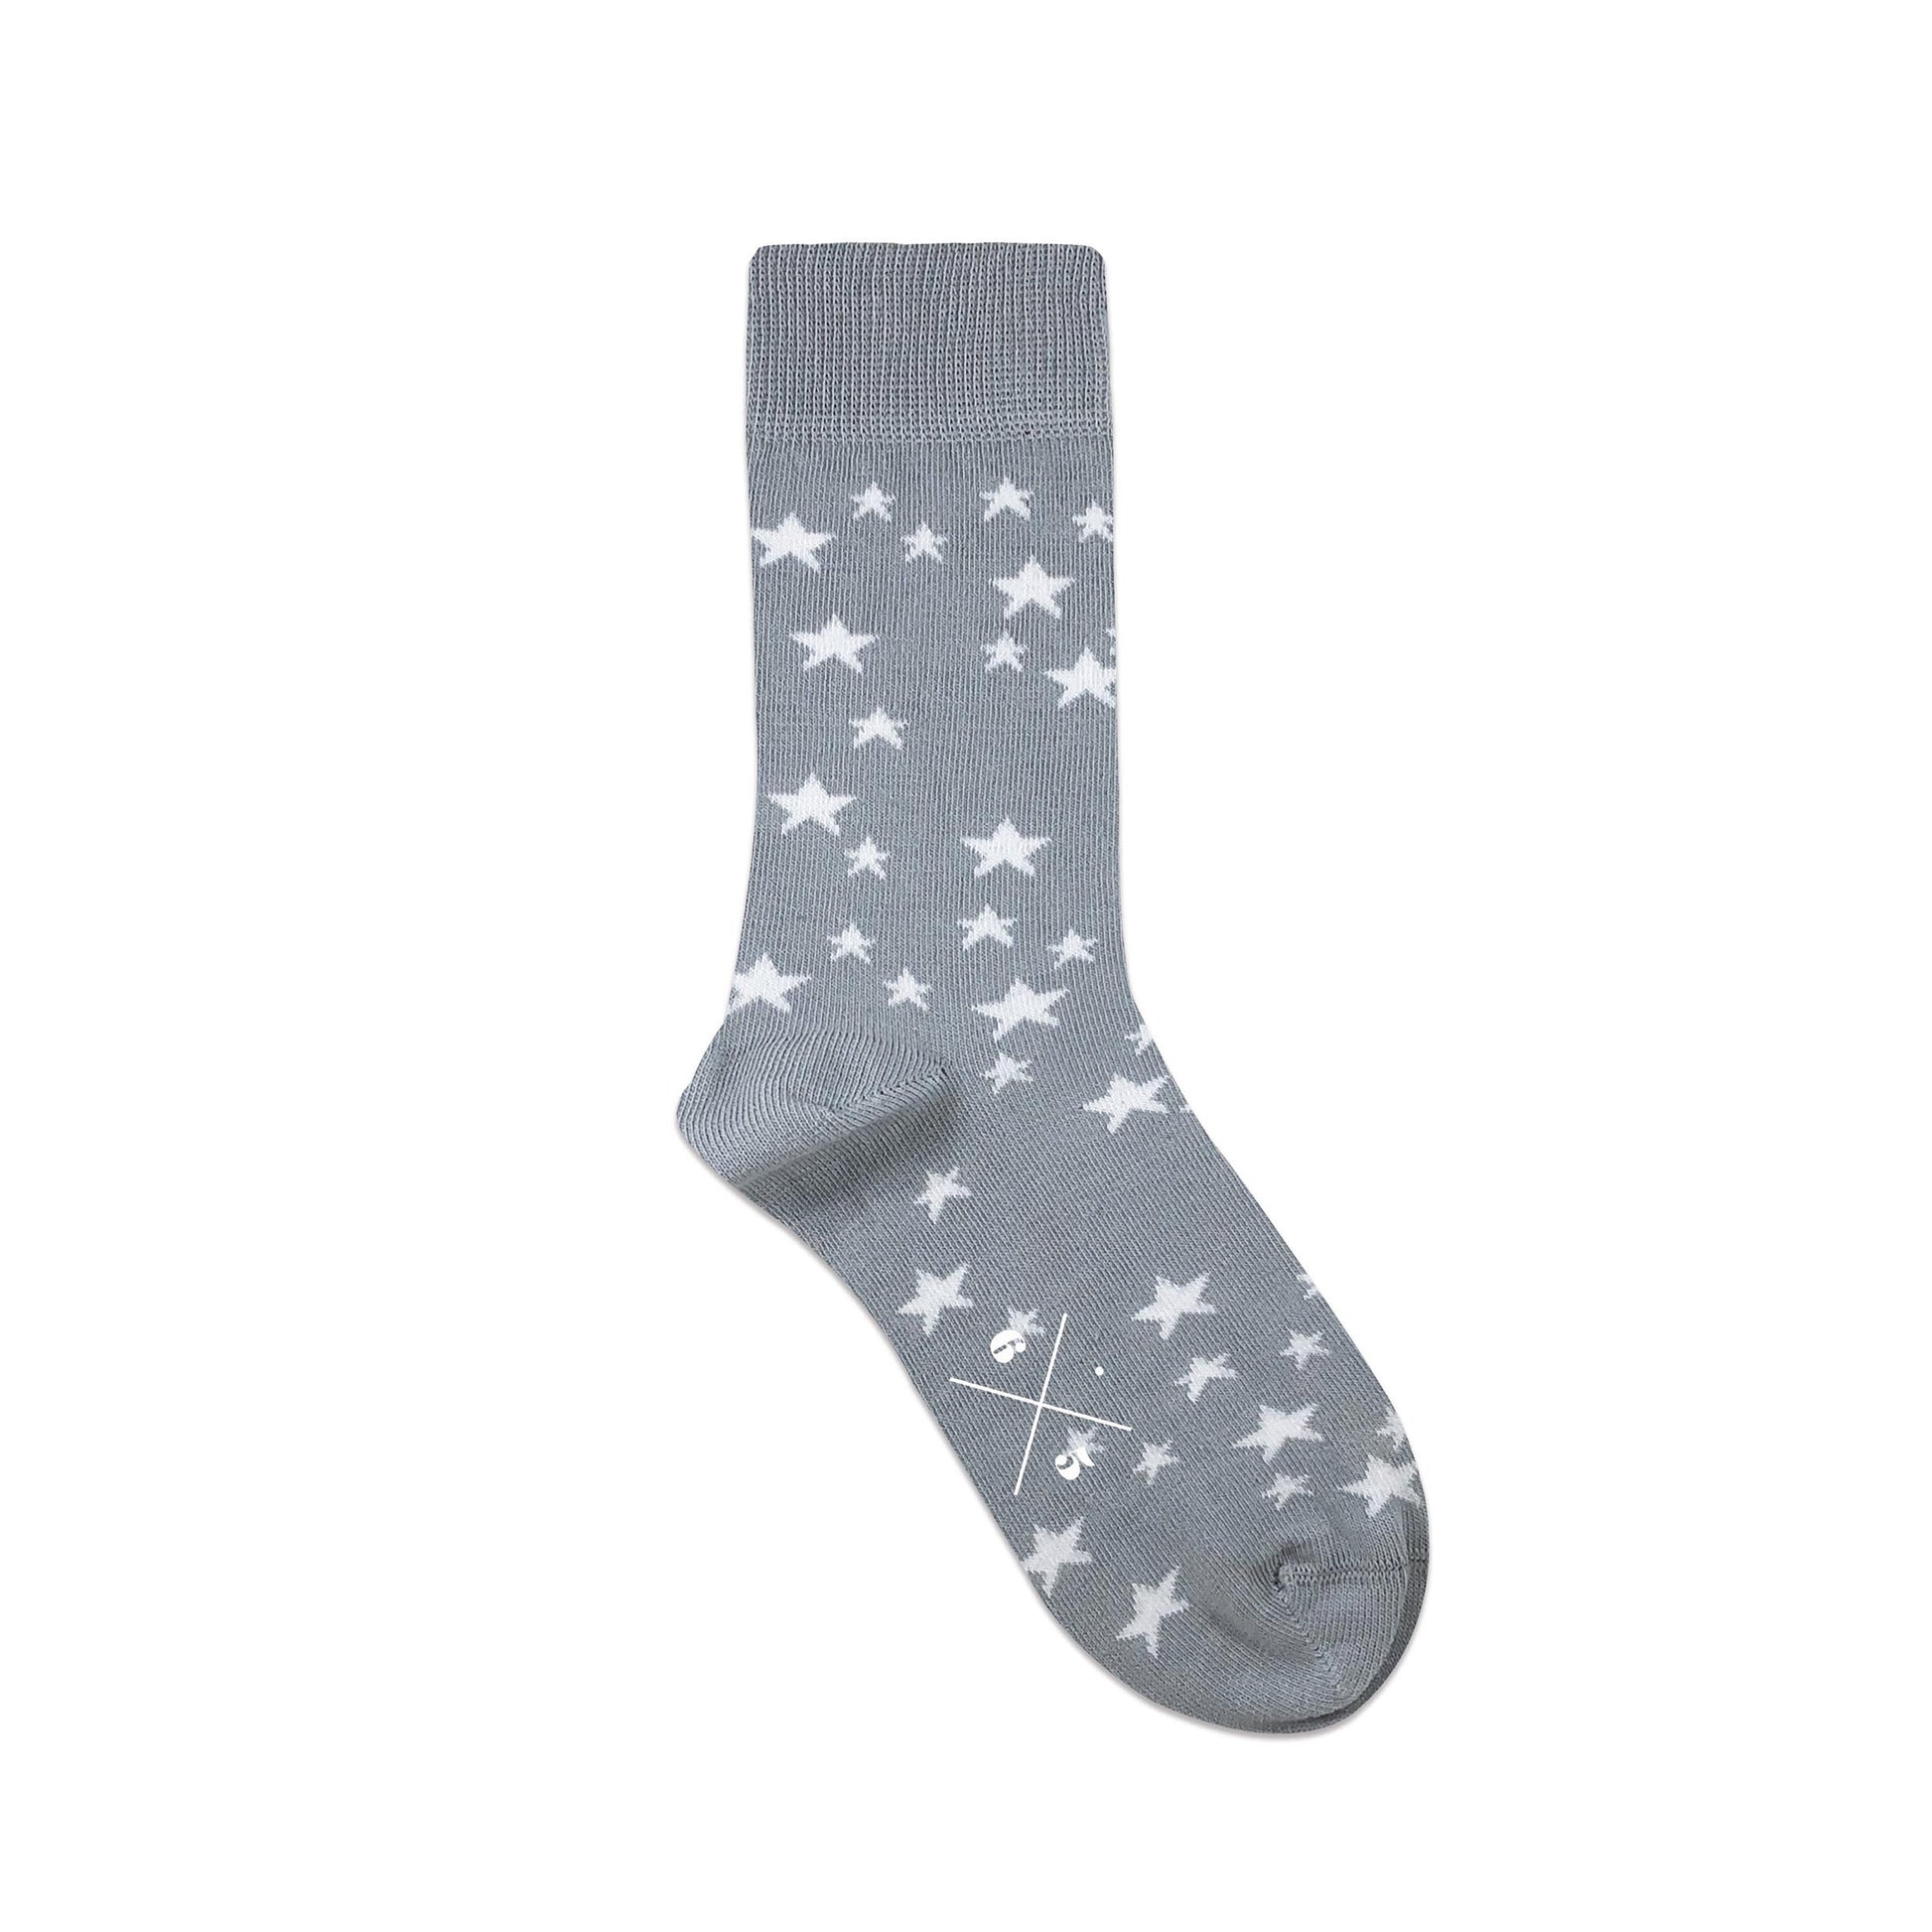 STARS SOFT GREY Gri Beyaz Yıldızlı Desenli Unisex Çorap - sixtimesfive